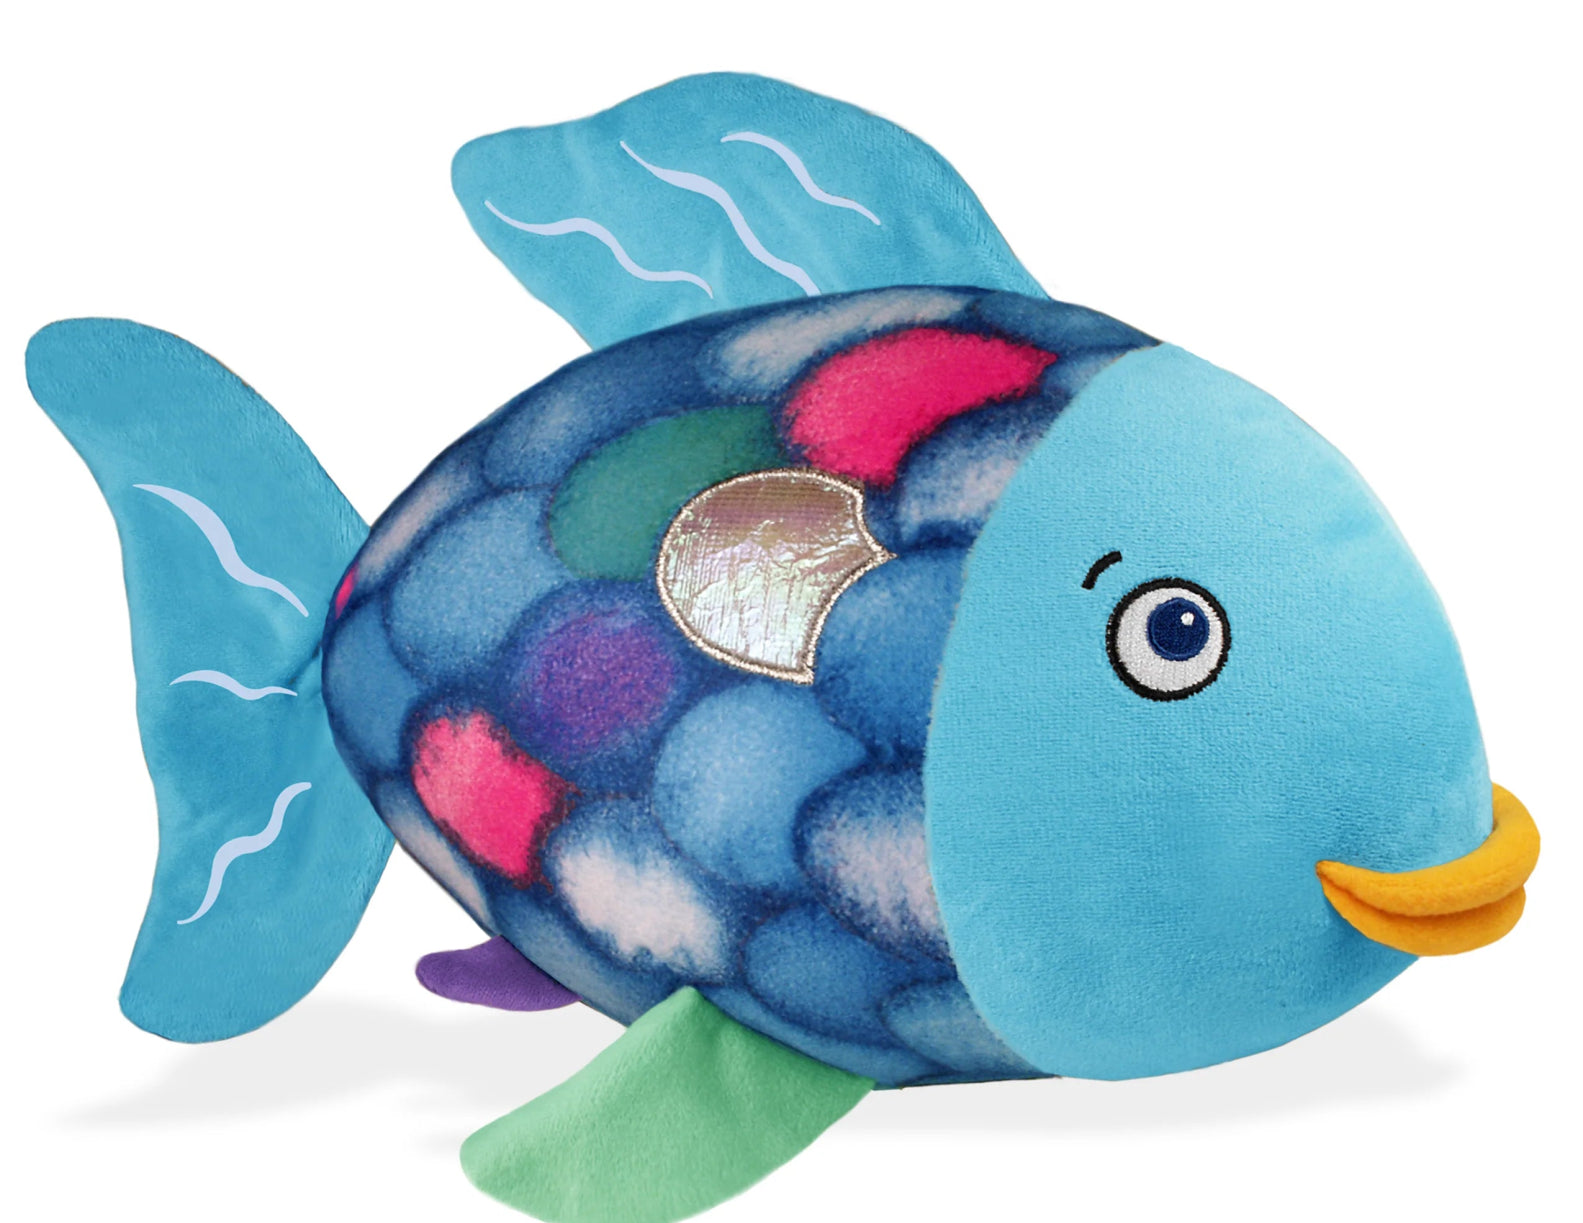 Rainbow Fish Soft Toy - Wren Harper